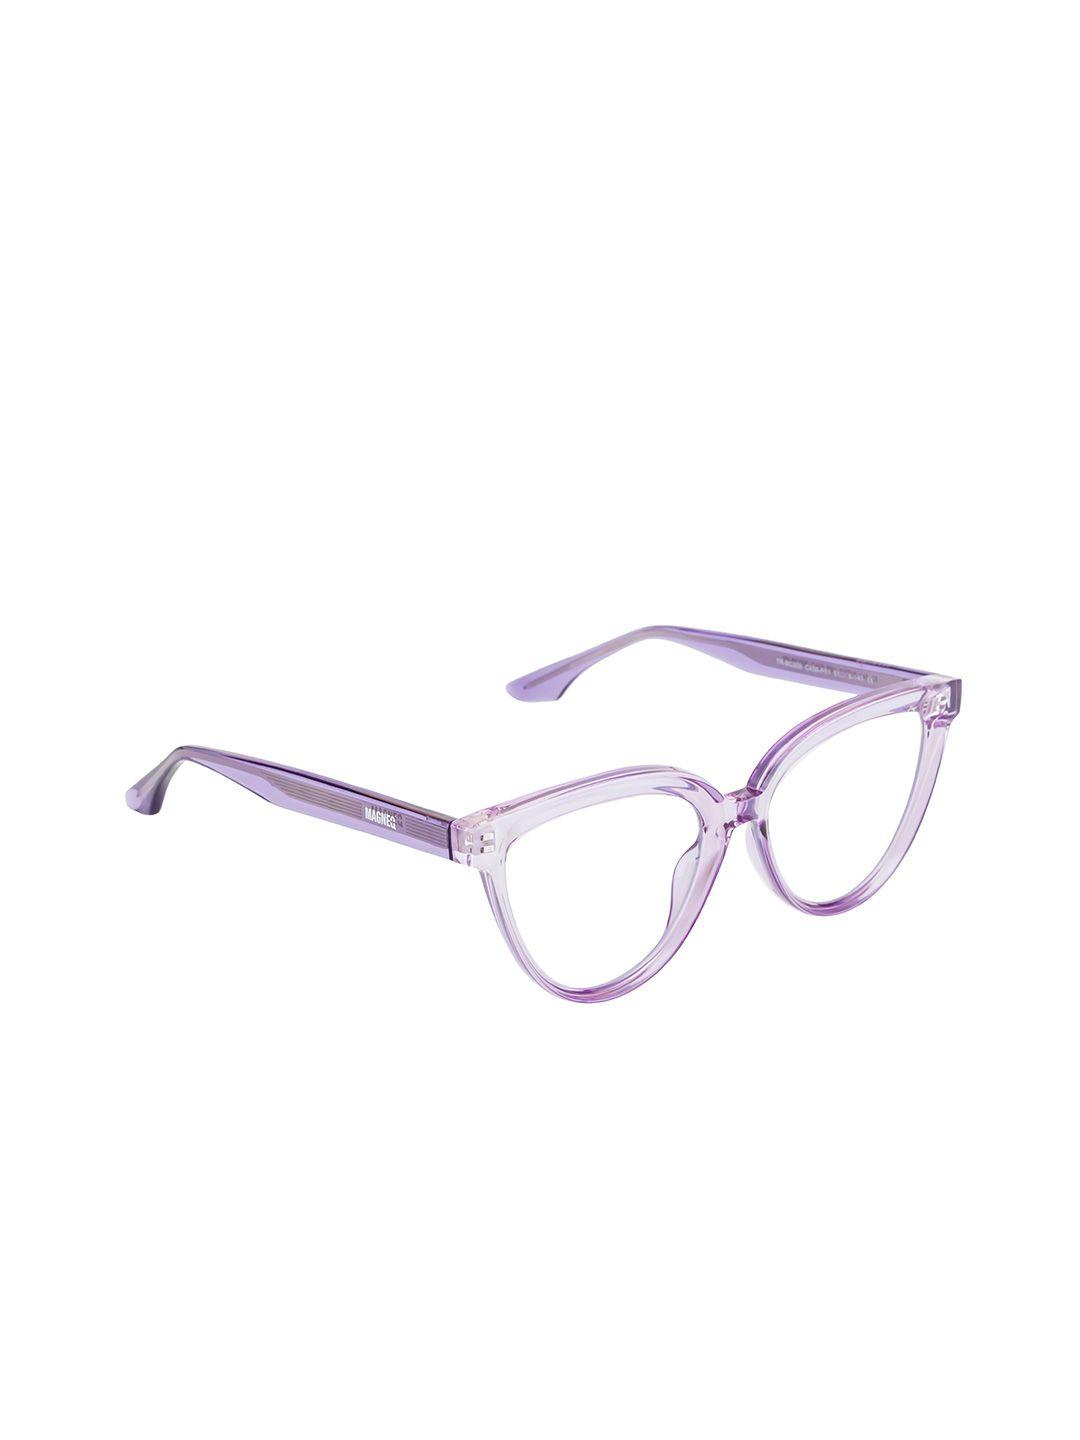 magneq cateye shaped lens sunglasses